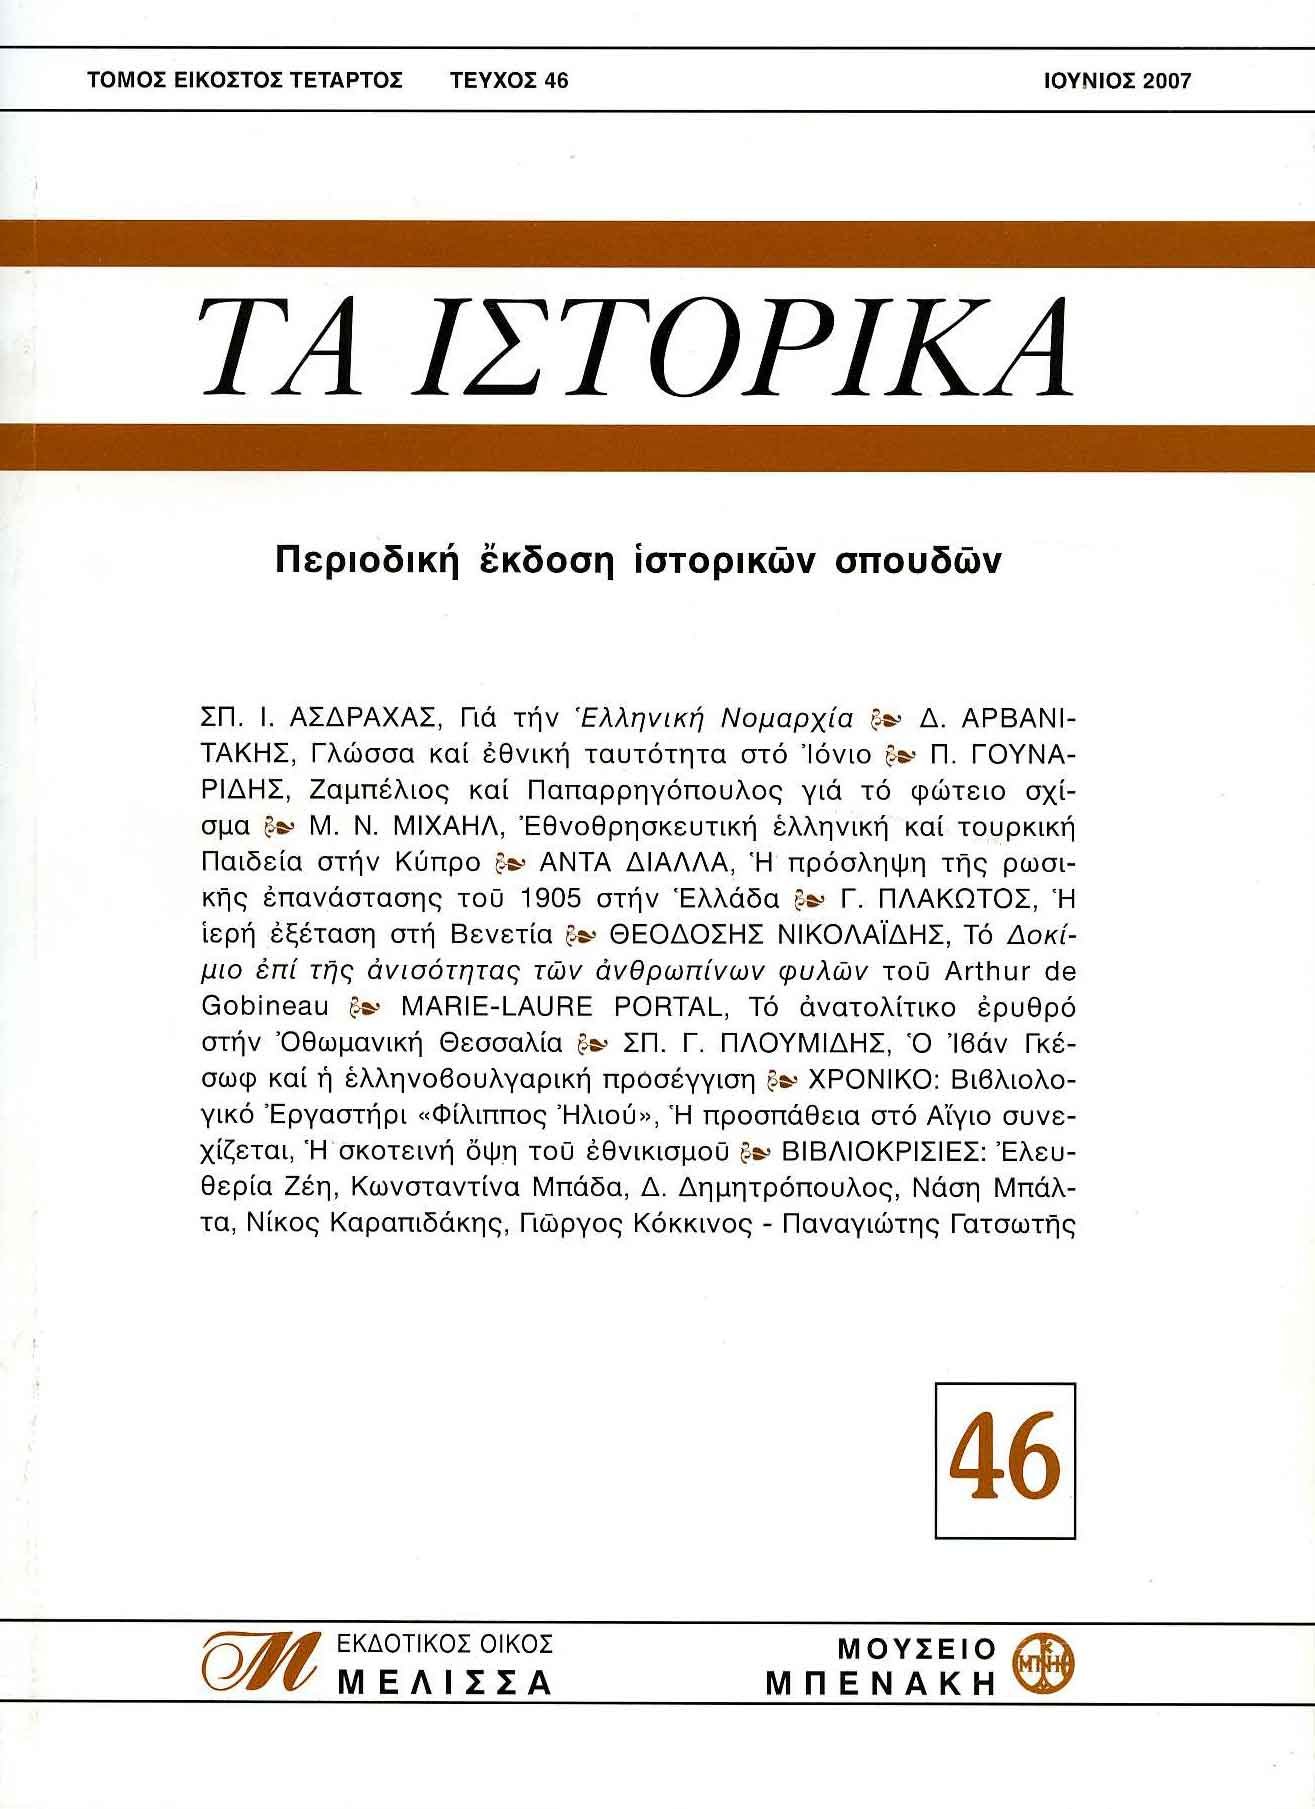 ΤΑ ΙΣΤΟΡΙΚΑ, τεύχος 46 (TA ISTORIKA, issue 46)